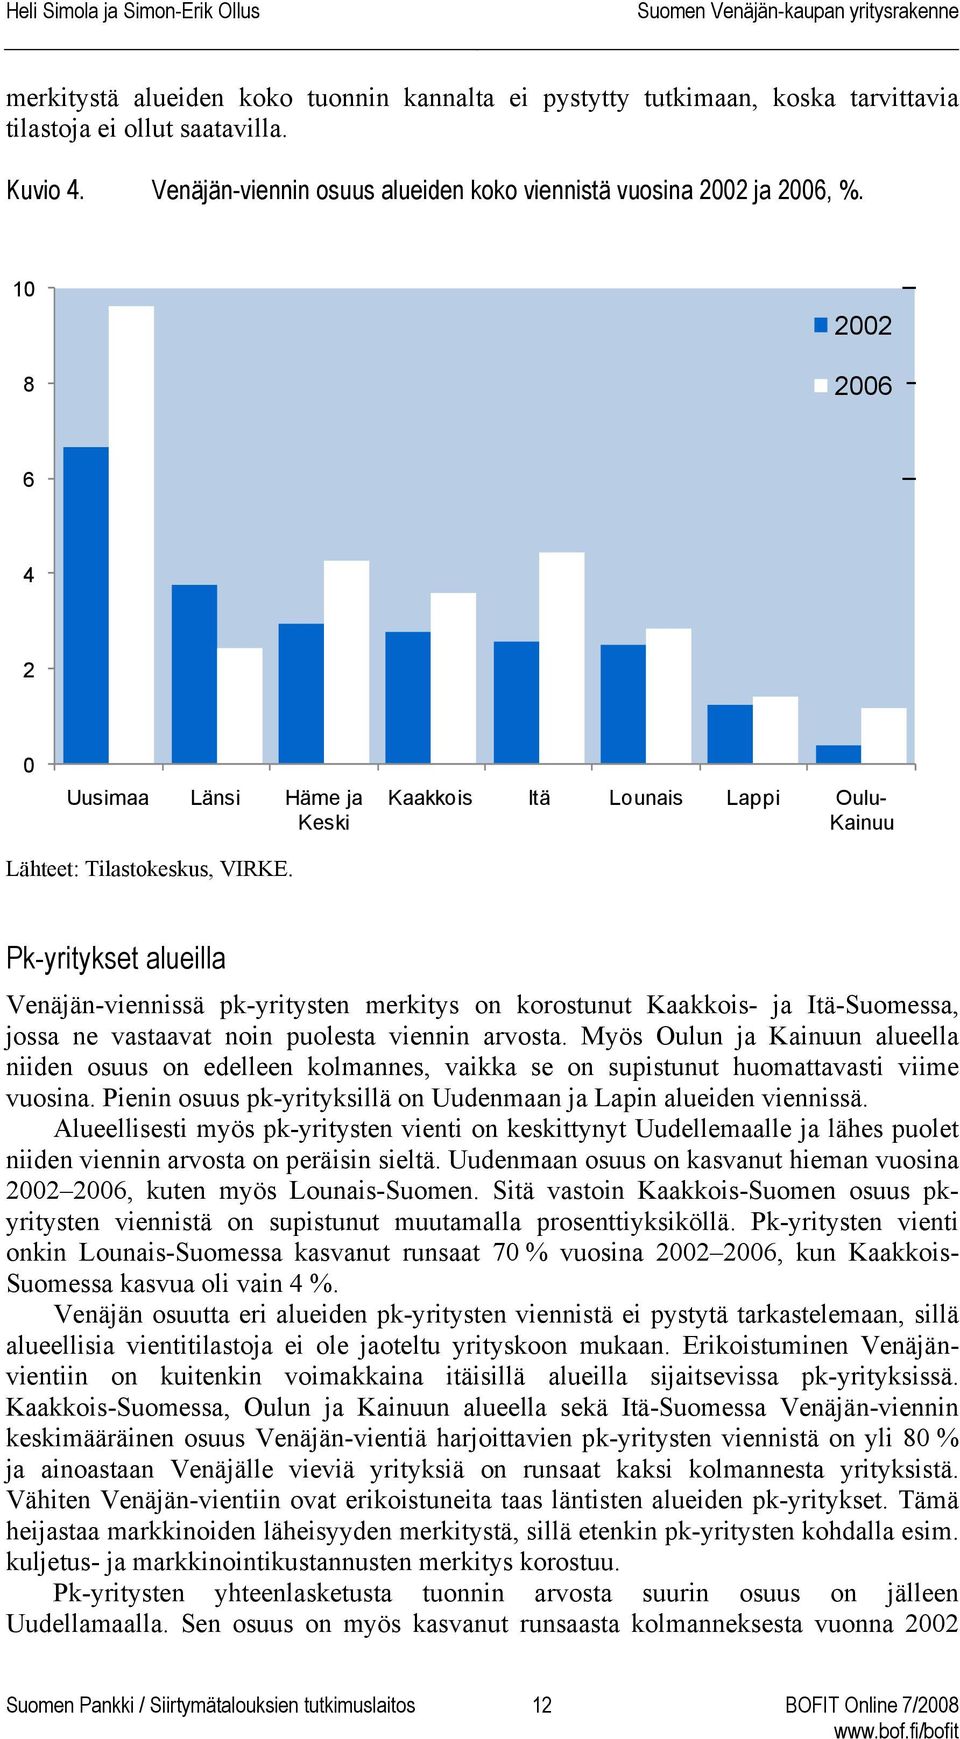 Pk-yritykset alueilla Venäjän-viennissä pk-yritysten merkitys on korostunut Kaakkois- ja Itä-Suomessa, jossa ne vastaavat noin puolesta viennin arvosta.